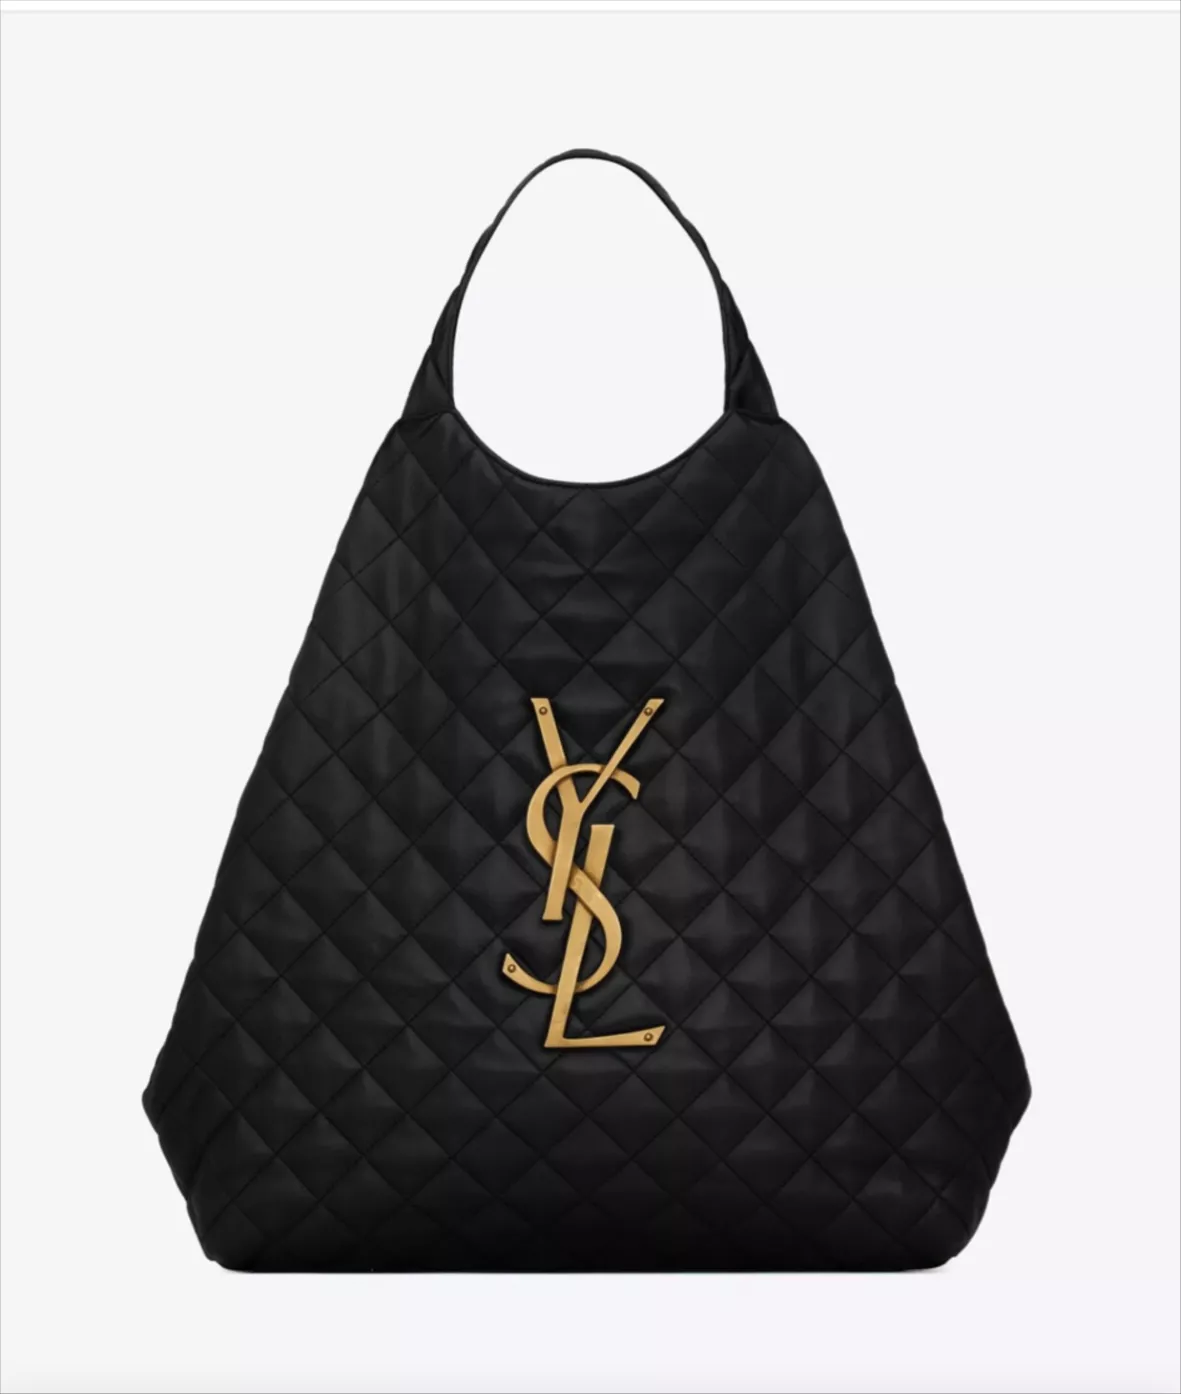 Ysl Bag Real Vs Fake Shop, SAVE 50% 